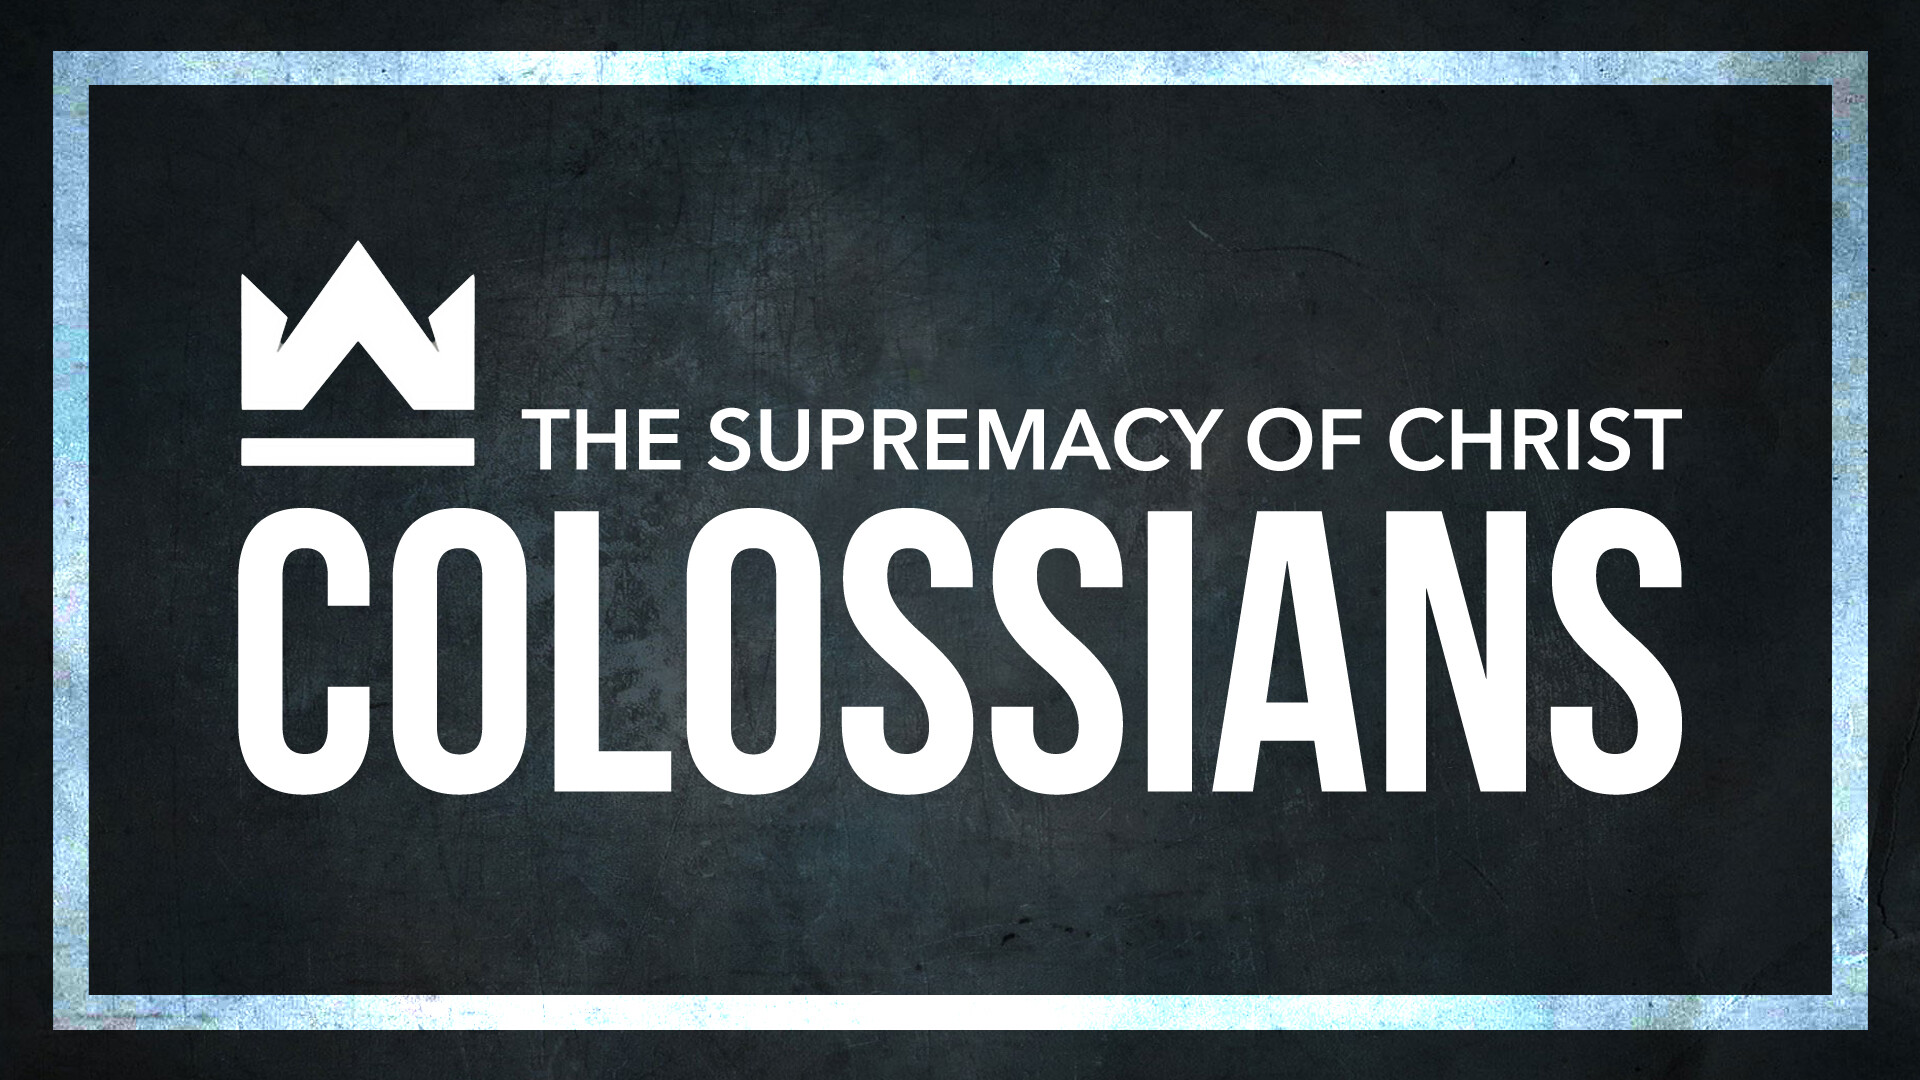 Colossians 3:18-4:1